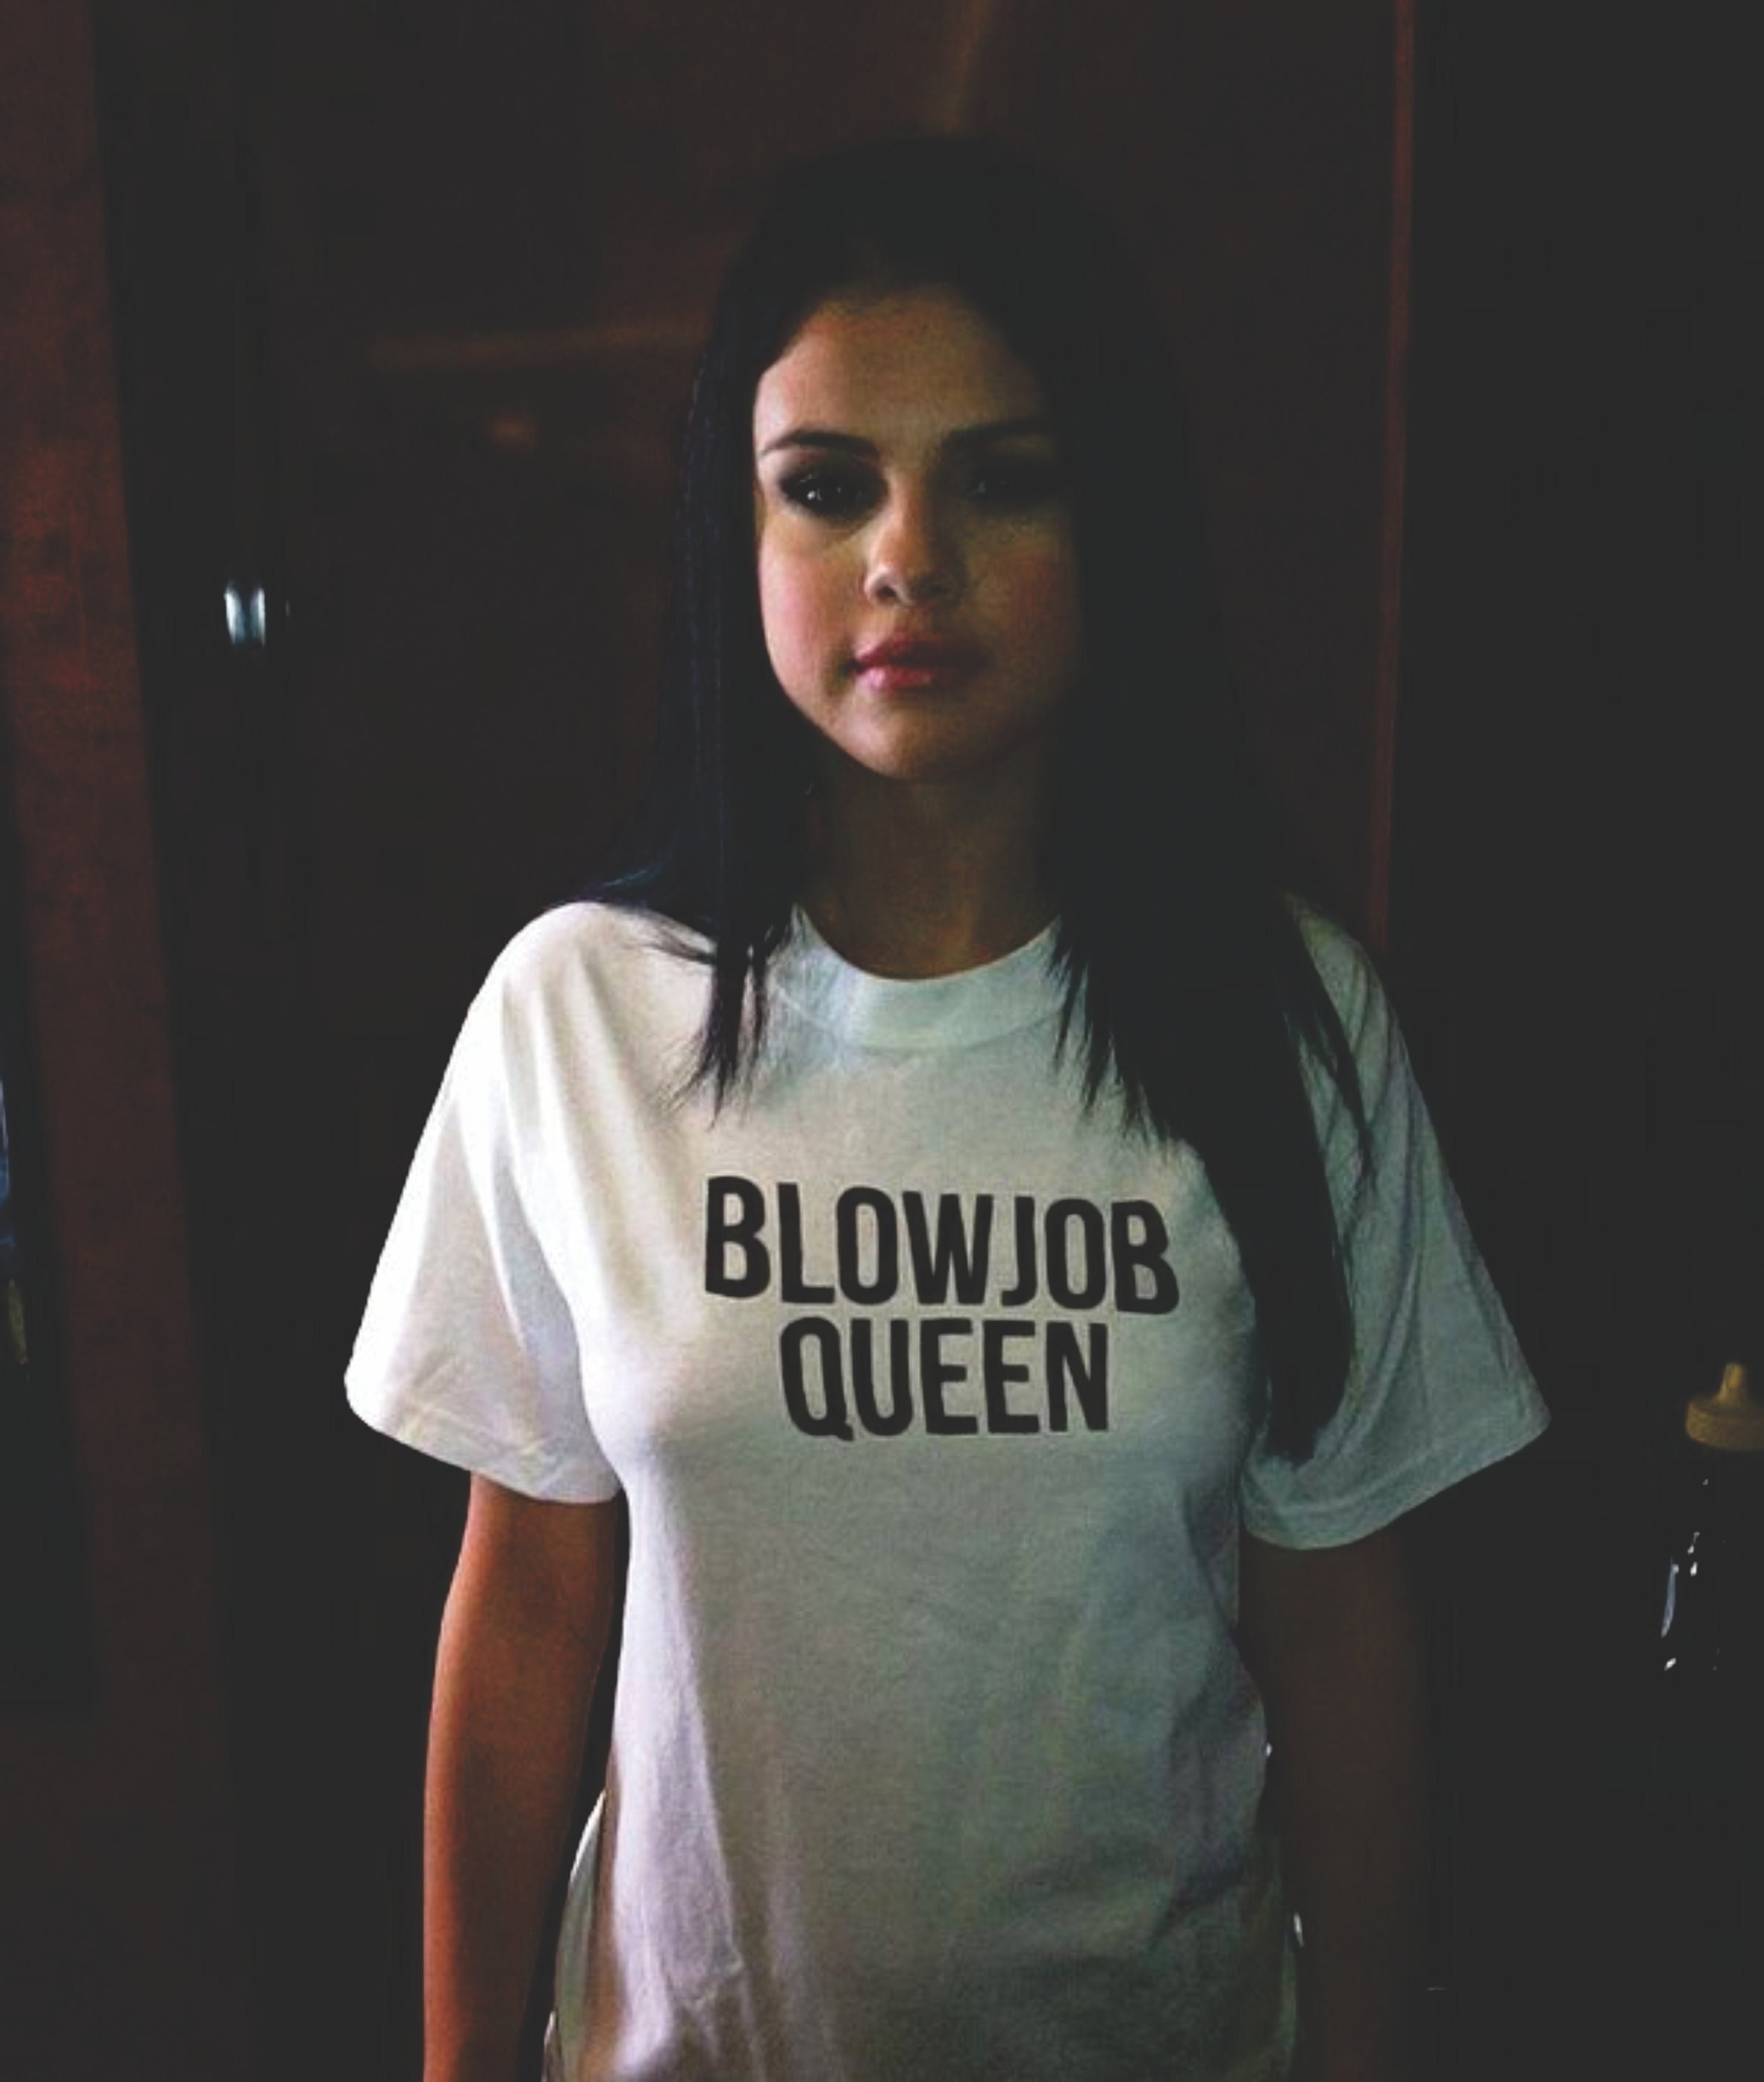 Blowjob queen